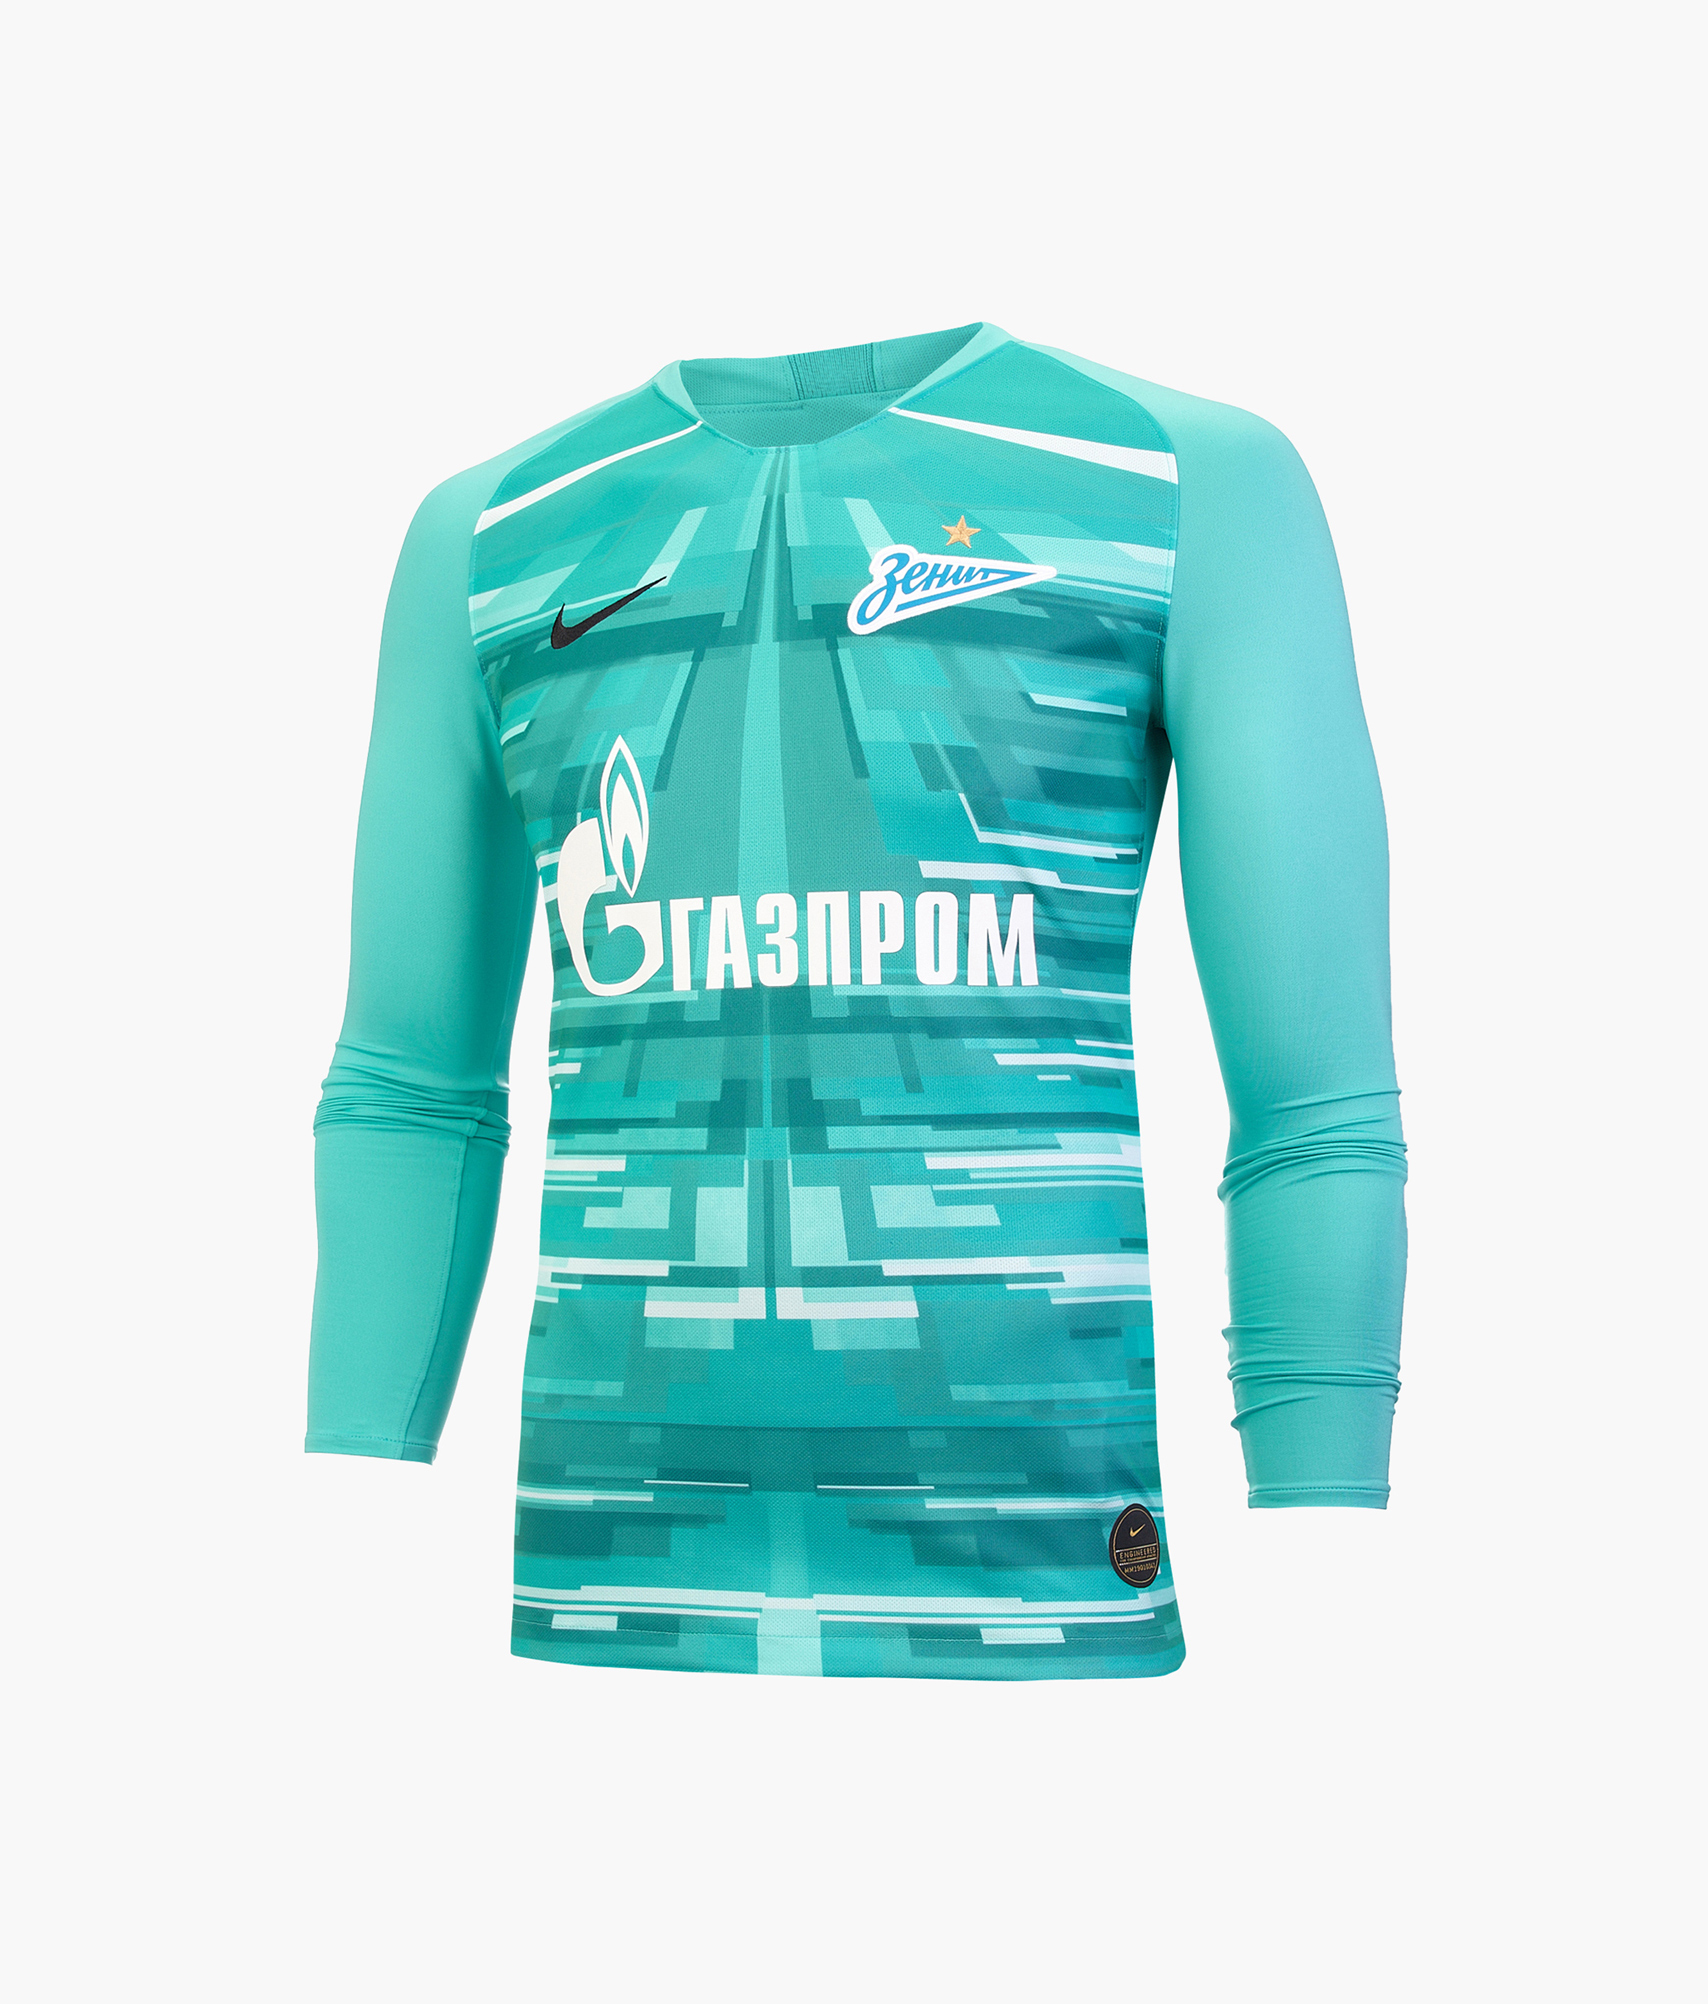 Вратарская футболка с длинным рукавом сезона 2019/20 Nike Цвет-Зеленый